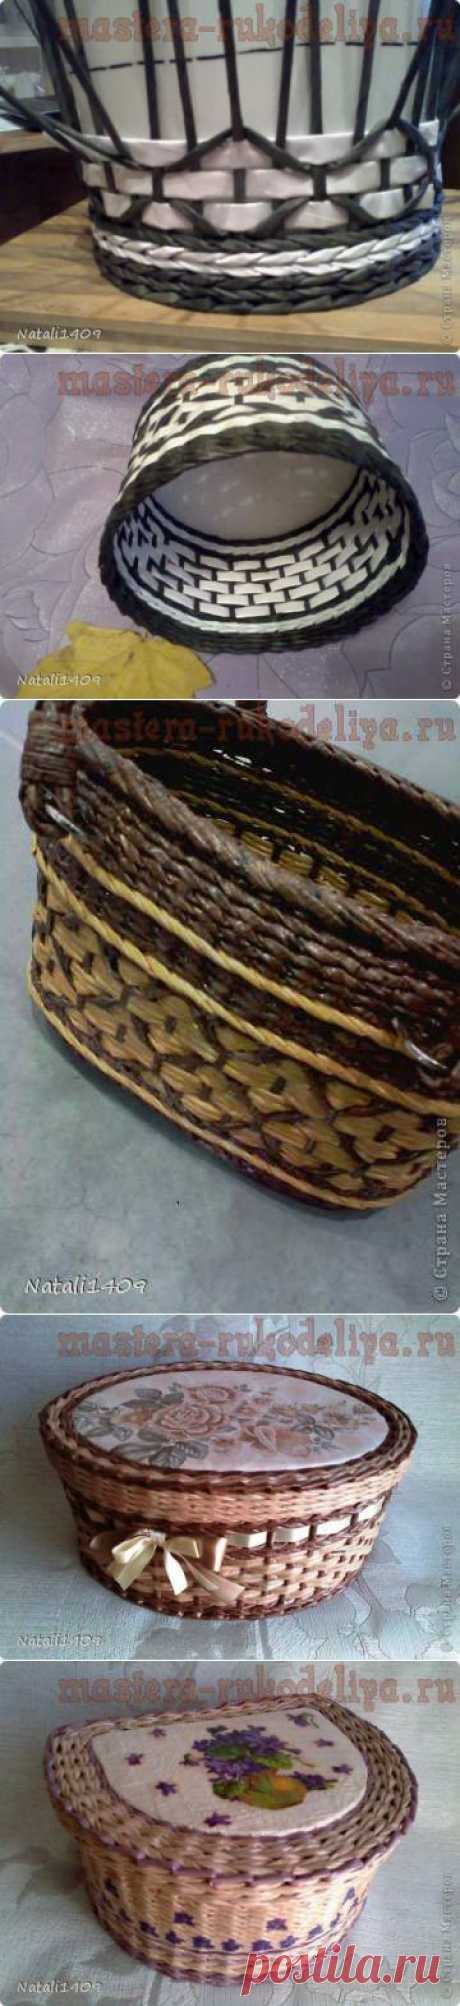 Ромбики (соты). МК по плетению из газет | Золотые Руки